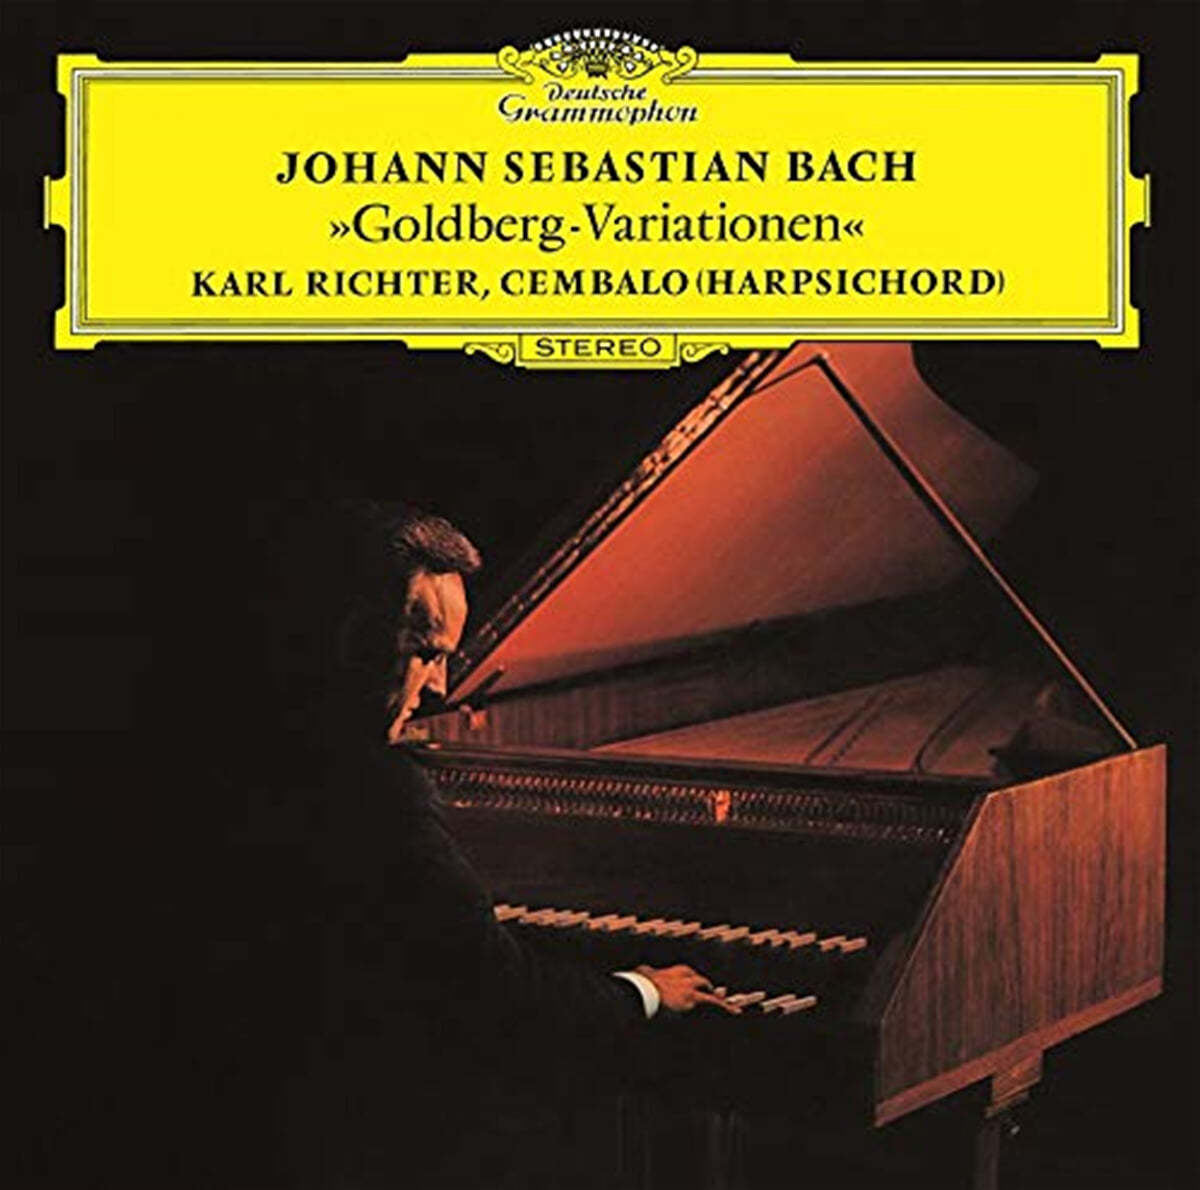 Karl Richter 바흐: 골드베르크 변주곡 (J.S Bach: Goldberg Variations)